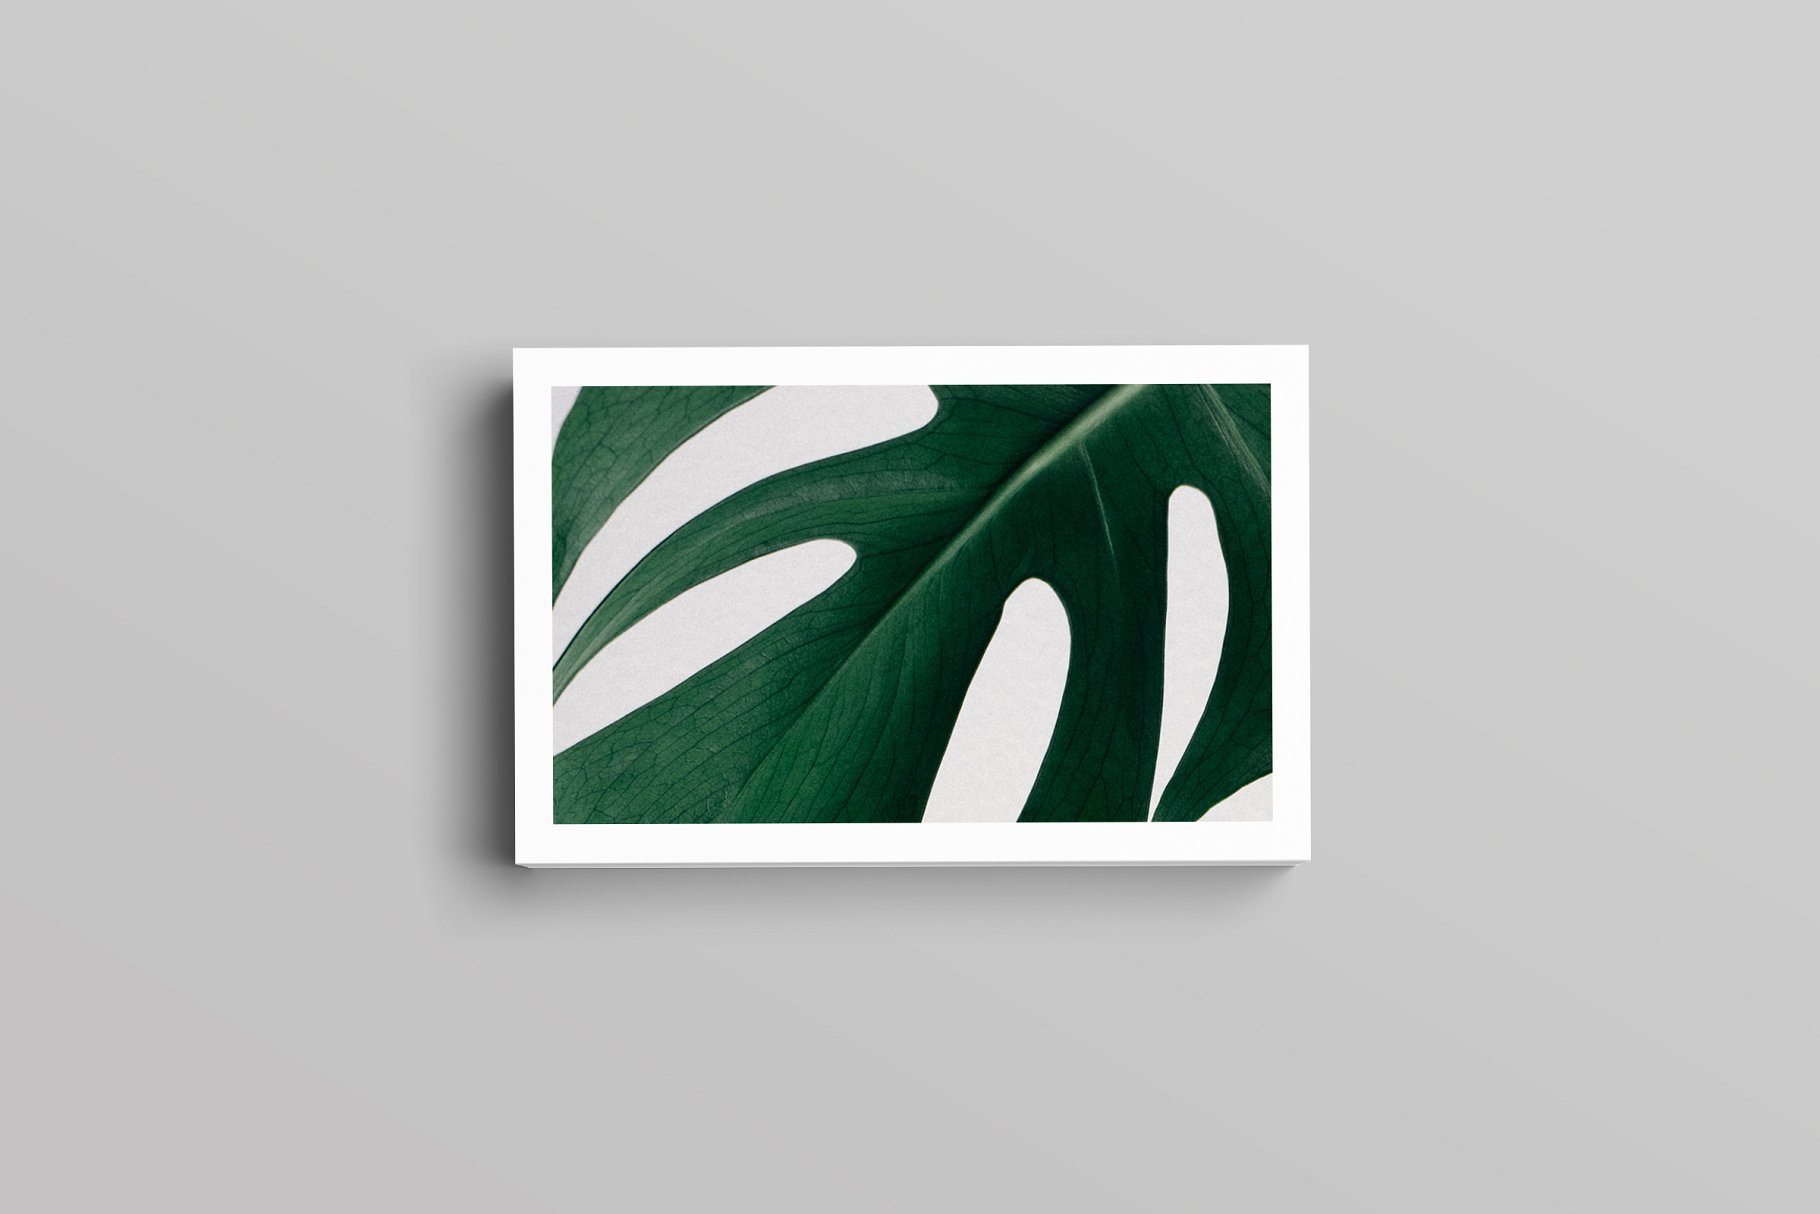 优雅简约风高端企业名片设计模板 Aaron Business Card Template插图(2)